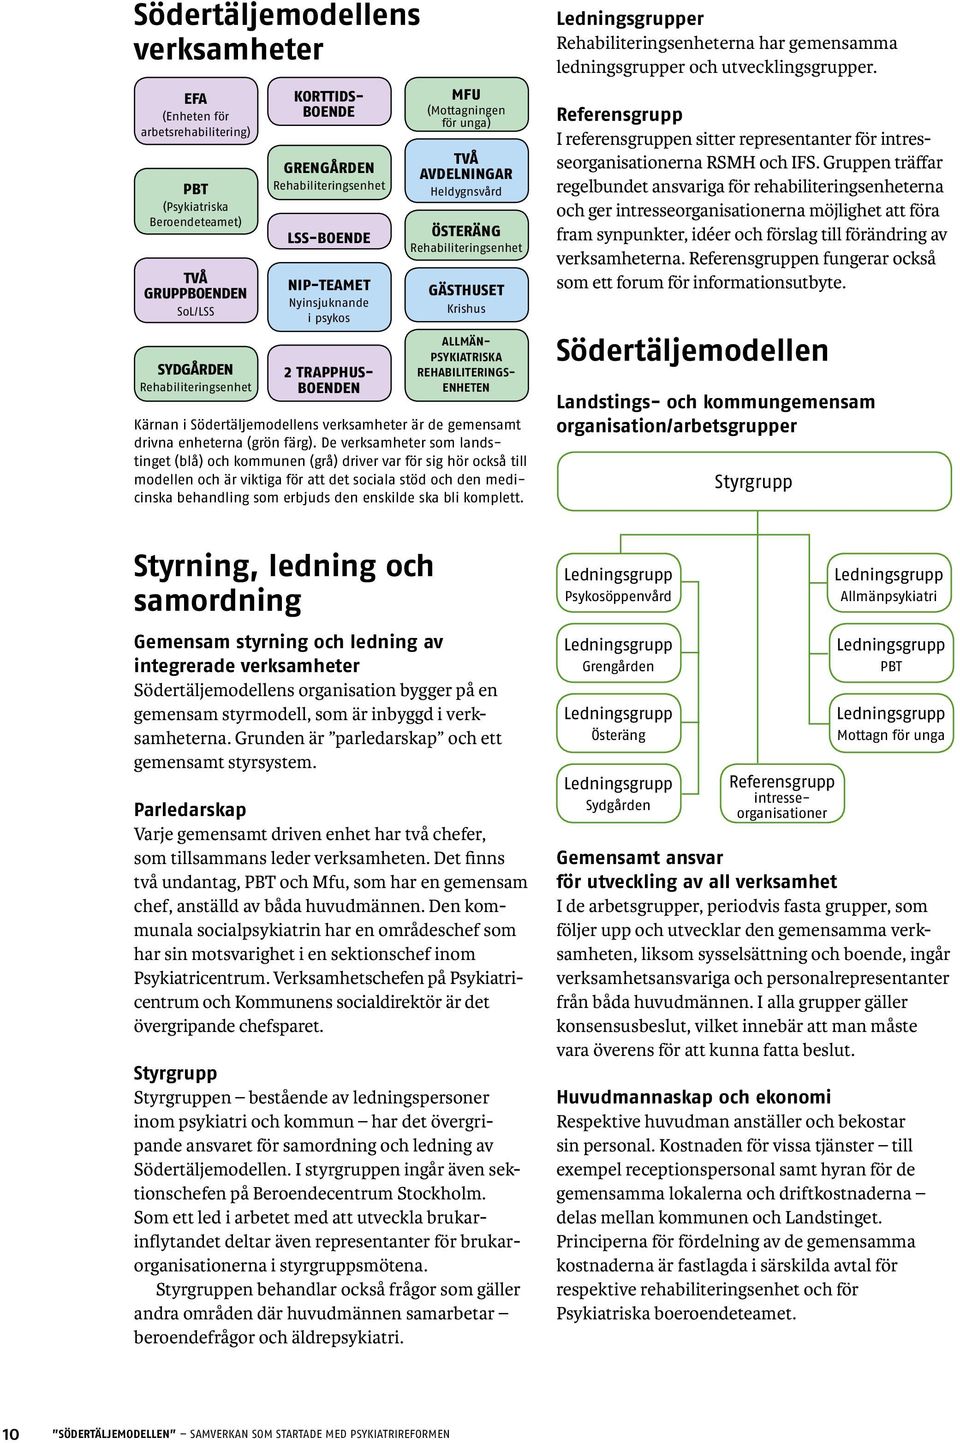 psykiatriska rehabiliteringsenheten Kärnan i Södertäljemodellens verksamheter är de gemensamt drivna enheterna (grön färg).